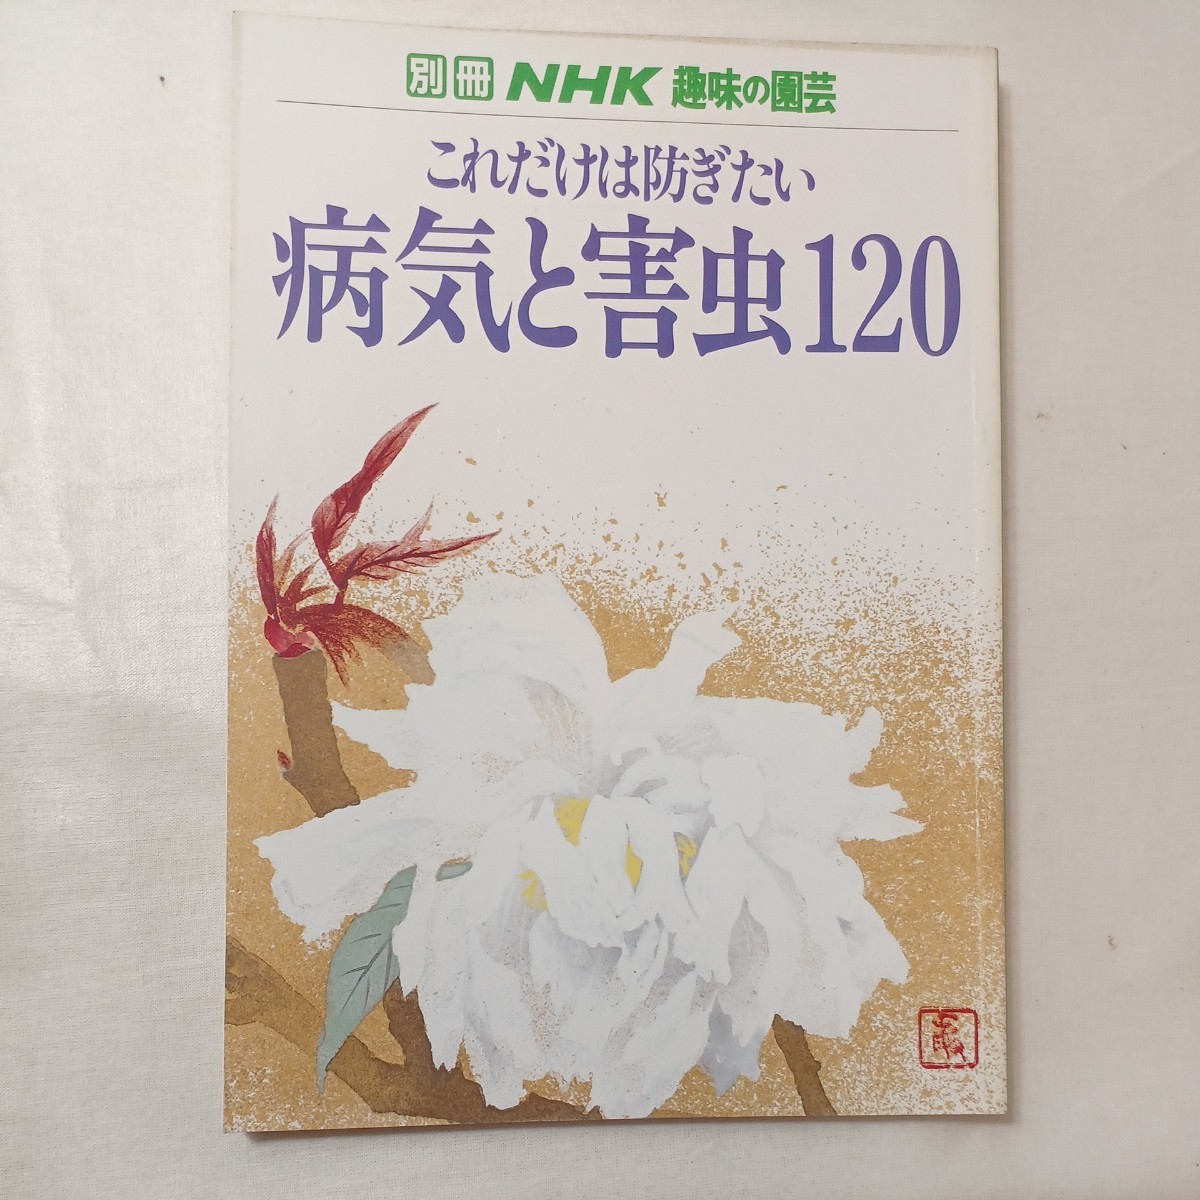 zaa-427! отдельный выпуск NHK хобби. садоводство только это. .. хочет болезнь ... насекомое 120 Япония радиовещание выпускать ассоциация (1983/02 продажа )